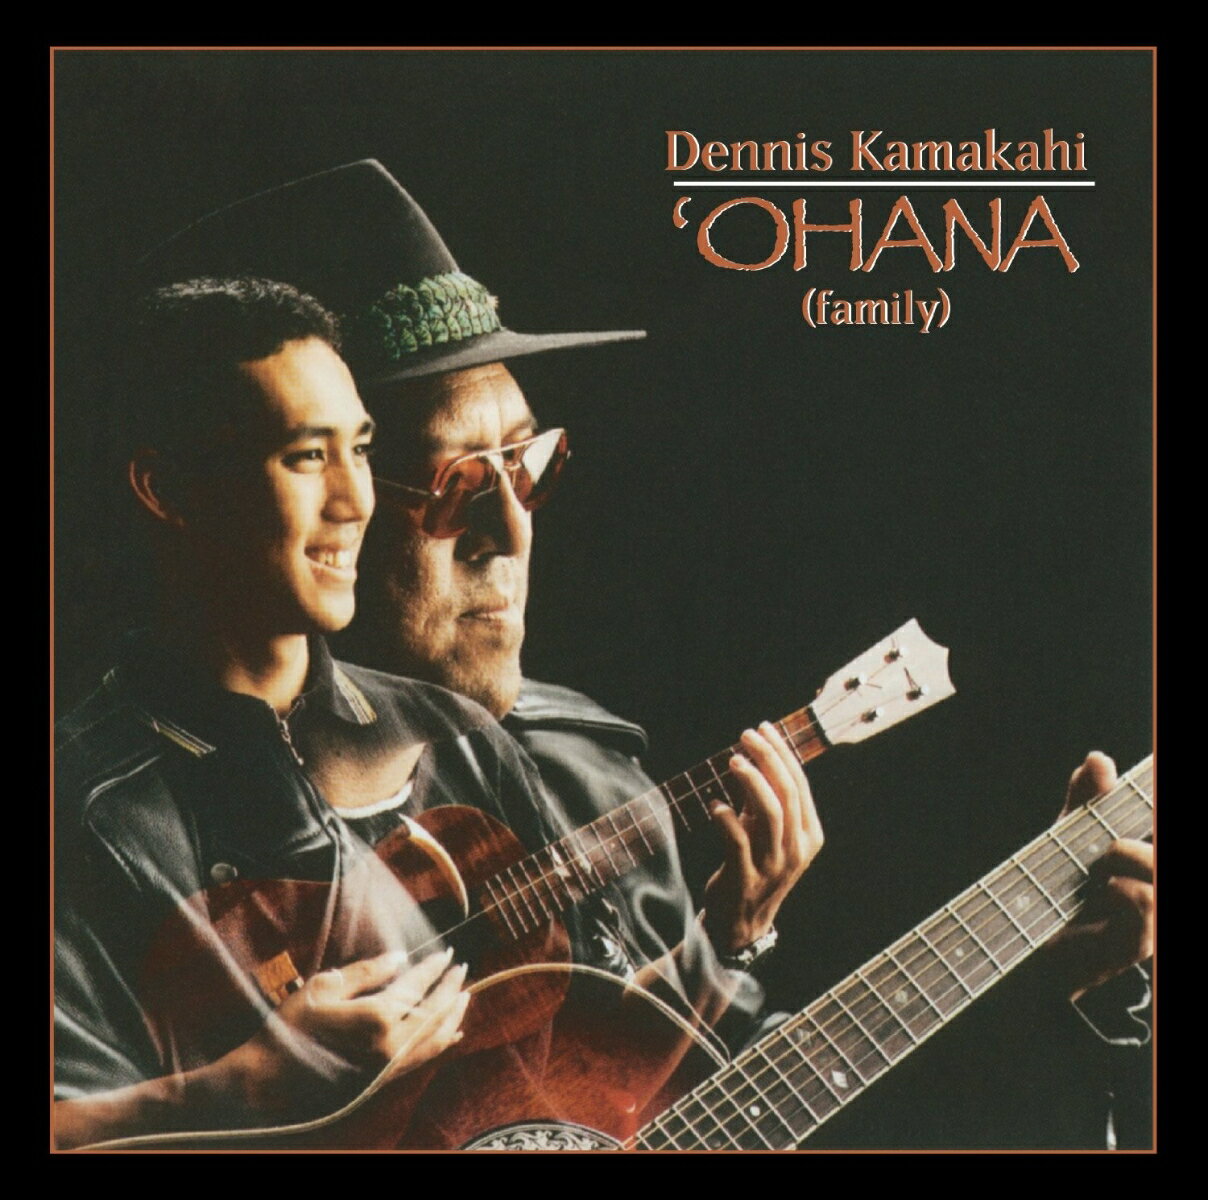 オナハ=家族の繋がりを大事にするハワイ。ハワイアン・スラック・キー・ギターもオハナに深く根ざしています。
主要なスラック・キー・ギタリストのほとんどは、最初の演奏の機会を両親や祖父母、叔母、叔父、従兄弟、兄弟などから
授けられています。デニスも「スラック・キー・ギターはオハナの影響で自然に身についたよ」と述べています。
本作は息子のデイヴィッドとのデュエットを始め、オハナから受け継いで来たハワイアンの古典作品や、リリウオカラ
ニ女王の作品、そして10曲目のオハナをテーマにしたオリジナル曲など、ハワイの心を伝える素晴らしい楽曲で構成されています。
アルバムタイトルの「オナハ」には、デニスがこのアルバムに世代を超えた伝承を託したいという気持ちを込めています。
「父から子へ、またその子へ、さらにまたその子へ。個々の人間に対し、音楽に対してのアロハの精神が引き継がれて
行くことが大切なんだ」（デニス）。なお7曲目は息子デイヴィッドのウクレレも美しい、映画「八十日間世界一周」の主題歌です。

＜収録内容＞
01. ウリリ・エ
02. アロハ・コオラウ
03. ノ・ケ・アハ
04. ヘ・アイ・ノ・カラニ
05. エ・ププカニオエ
06. カ・オパエ
07. アラウンド・ザ・ワールド
08. モアナルア
09. ヘエイア
10. オハナ・スラック・キー
11. プア・ホネ
12. カ・ハヌ・オ・カ・ハナケオキ
13. イケ・ラ・ラダナ(女王の祝祭) (ヴォーカル)
14. イケ・ラ・ラダナ(女王の祝祭) (インストゥルメンタル) (全13曲14ヴァージョン収録、3、7、10、14曲目はインストゥルメンタル曲)

■デニス・カマカヒ プロフィール
1953年ホノルル生まれ。3歳の時に母の古いマーティン製のウクレレを手に取った。
その後祖父のデイヴィッド・ナオオ・カマカヒと父のケネス・カマカヒからギターを教わる。
11歳から13歳のころには一日8時間スラック・キー・ギターを弾く様になる。
ギターを弾く中で、ハワイを代表するギタリスト、ギャビー・パヒヌイ、サニー・チリングワース、レオナード・クワン、
レイ・カーネ、アッタ・アイザクスなどから強い影響を受ける。またロックからも大きな影響を受け、高校時代に“ナ・パニオロ”というバンドを結成した。1972年にはハワイを代表するバンド、“ザ・サンズ・オブ・ハワイ”のバンドリーダーであるエディ・カマエに
出会い、1973年にメンバーとして同バンドに加わり、多くの曲を作曲し、1995年まで在籍した。
1996年に10年ぶりのレコーディング作となる本「プアエア〜そよかぜのギター、優しき歌声〜」をリリース。またこのアルバムは
初めての全曲ソロのスラック・キー・ギターによるアルバムでもある。1999年には息子のデイヴィッドのウクレレを交えてのアルバ
ム「オハナ〜素晴しきファミリー・デュエット〜」をリリースし、話題となる。
その後ジョージ・ウィンストンプロデュースによるアルバム「Hui Aloha」に参加。2003年には自身のプロダクションを設立。
2011年には最後のアルバムとなる「Waimaka Helei」をステファン・イングリスと共作でリリース。2014年4月28日に亡くなる。
生前500曲以上の作曲を行い、多くの曲はハワイアンのスタンダード曲として今も演奏されている。
また3回のグラミー賞を獲得しており、2012年にはハワイのミュージシャンとして初めてスミソニアン博物館にギターが収蔵された。
その経歴はまさにハワイを代表するギタリスト、ボーカリスト、作曲家として正真正銘のレジェンドと言える。